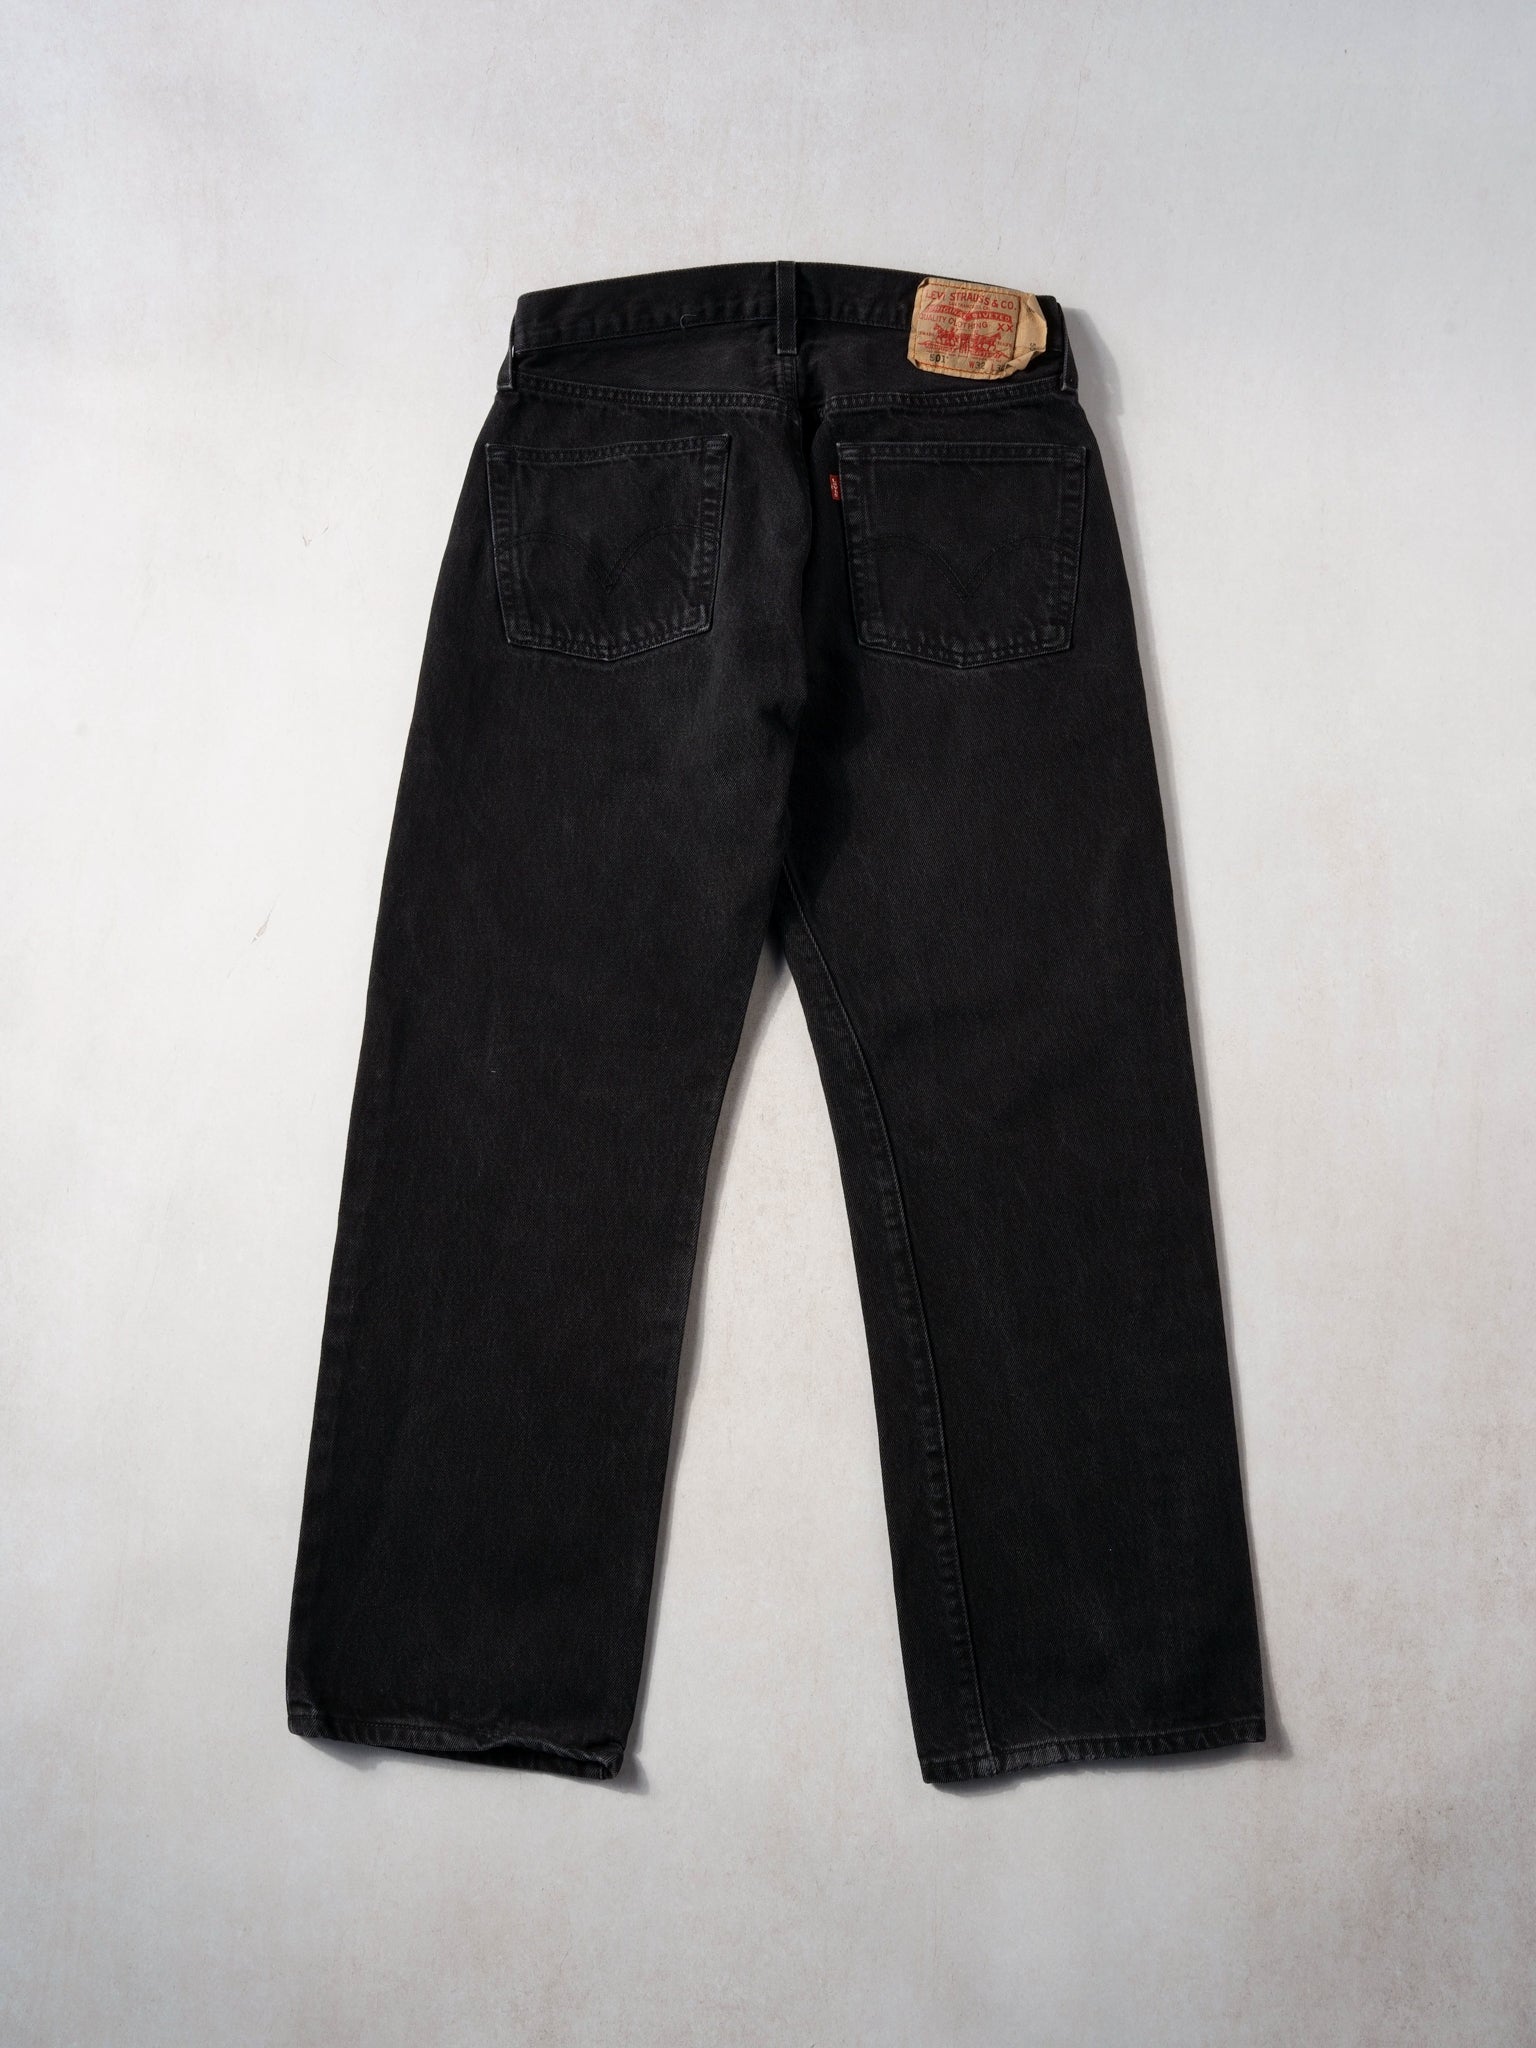 Vintage 90s Black Levi's 501 Denim Jeans (30x29)